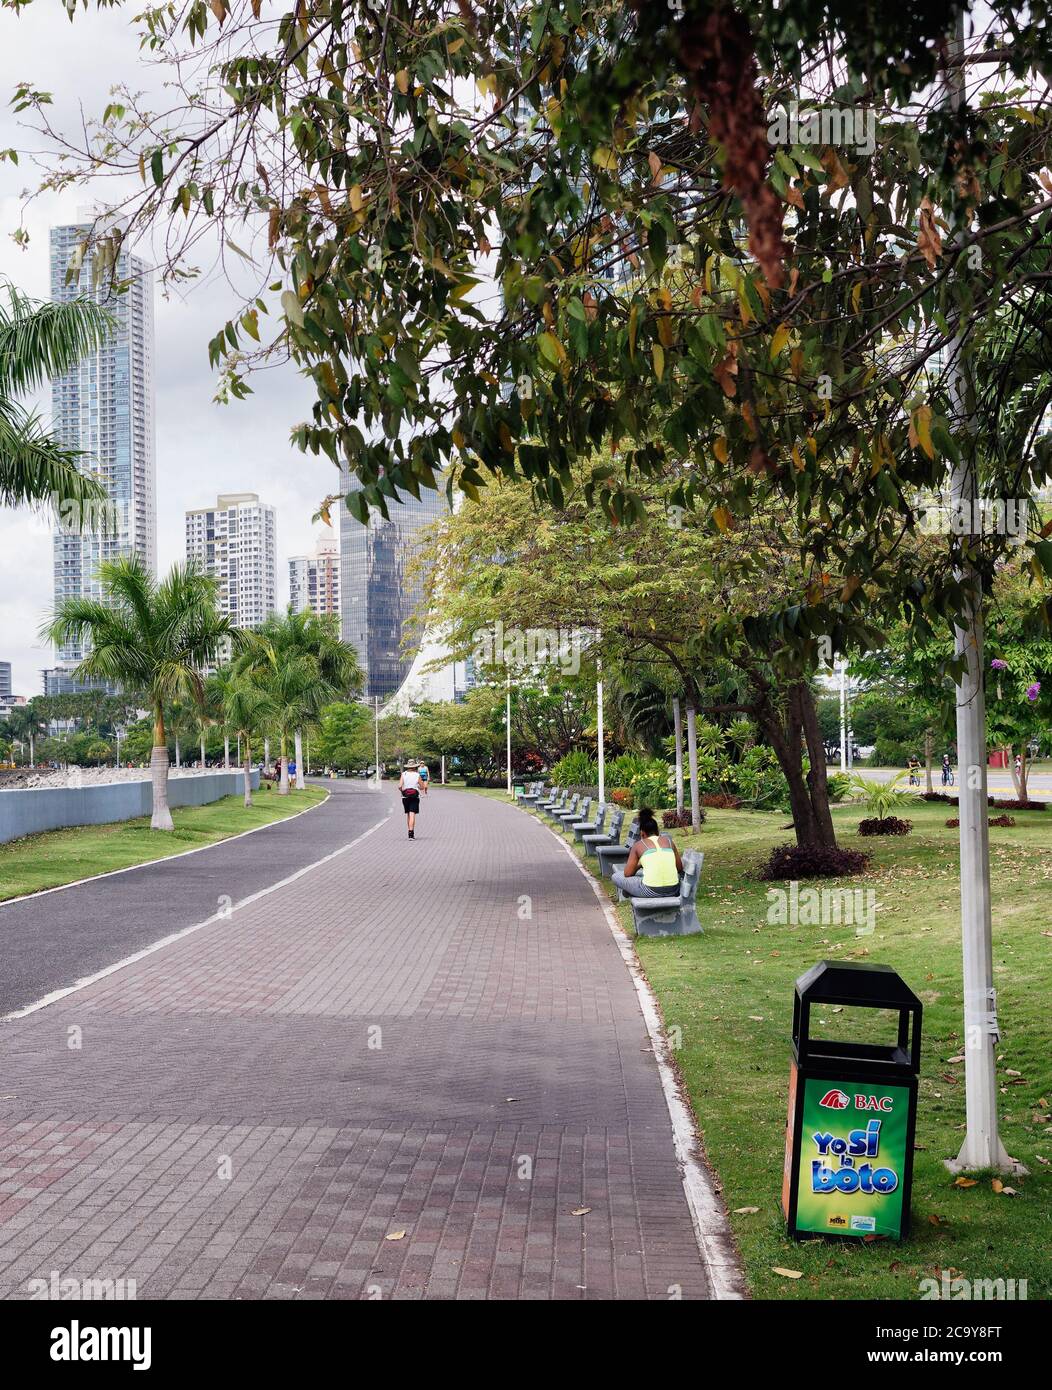 Der offene Fußweg entlang des mirador in Panama City, wo man spazieren gehen, joggen und sitzen kann. Stockfoto